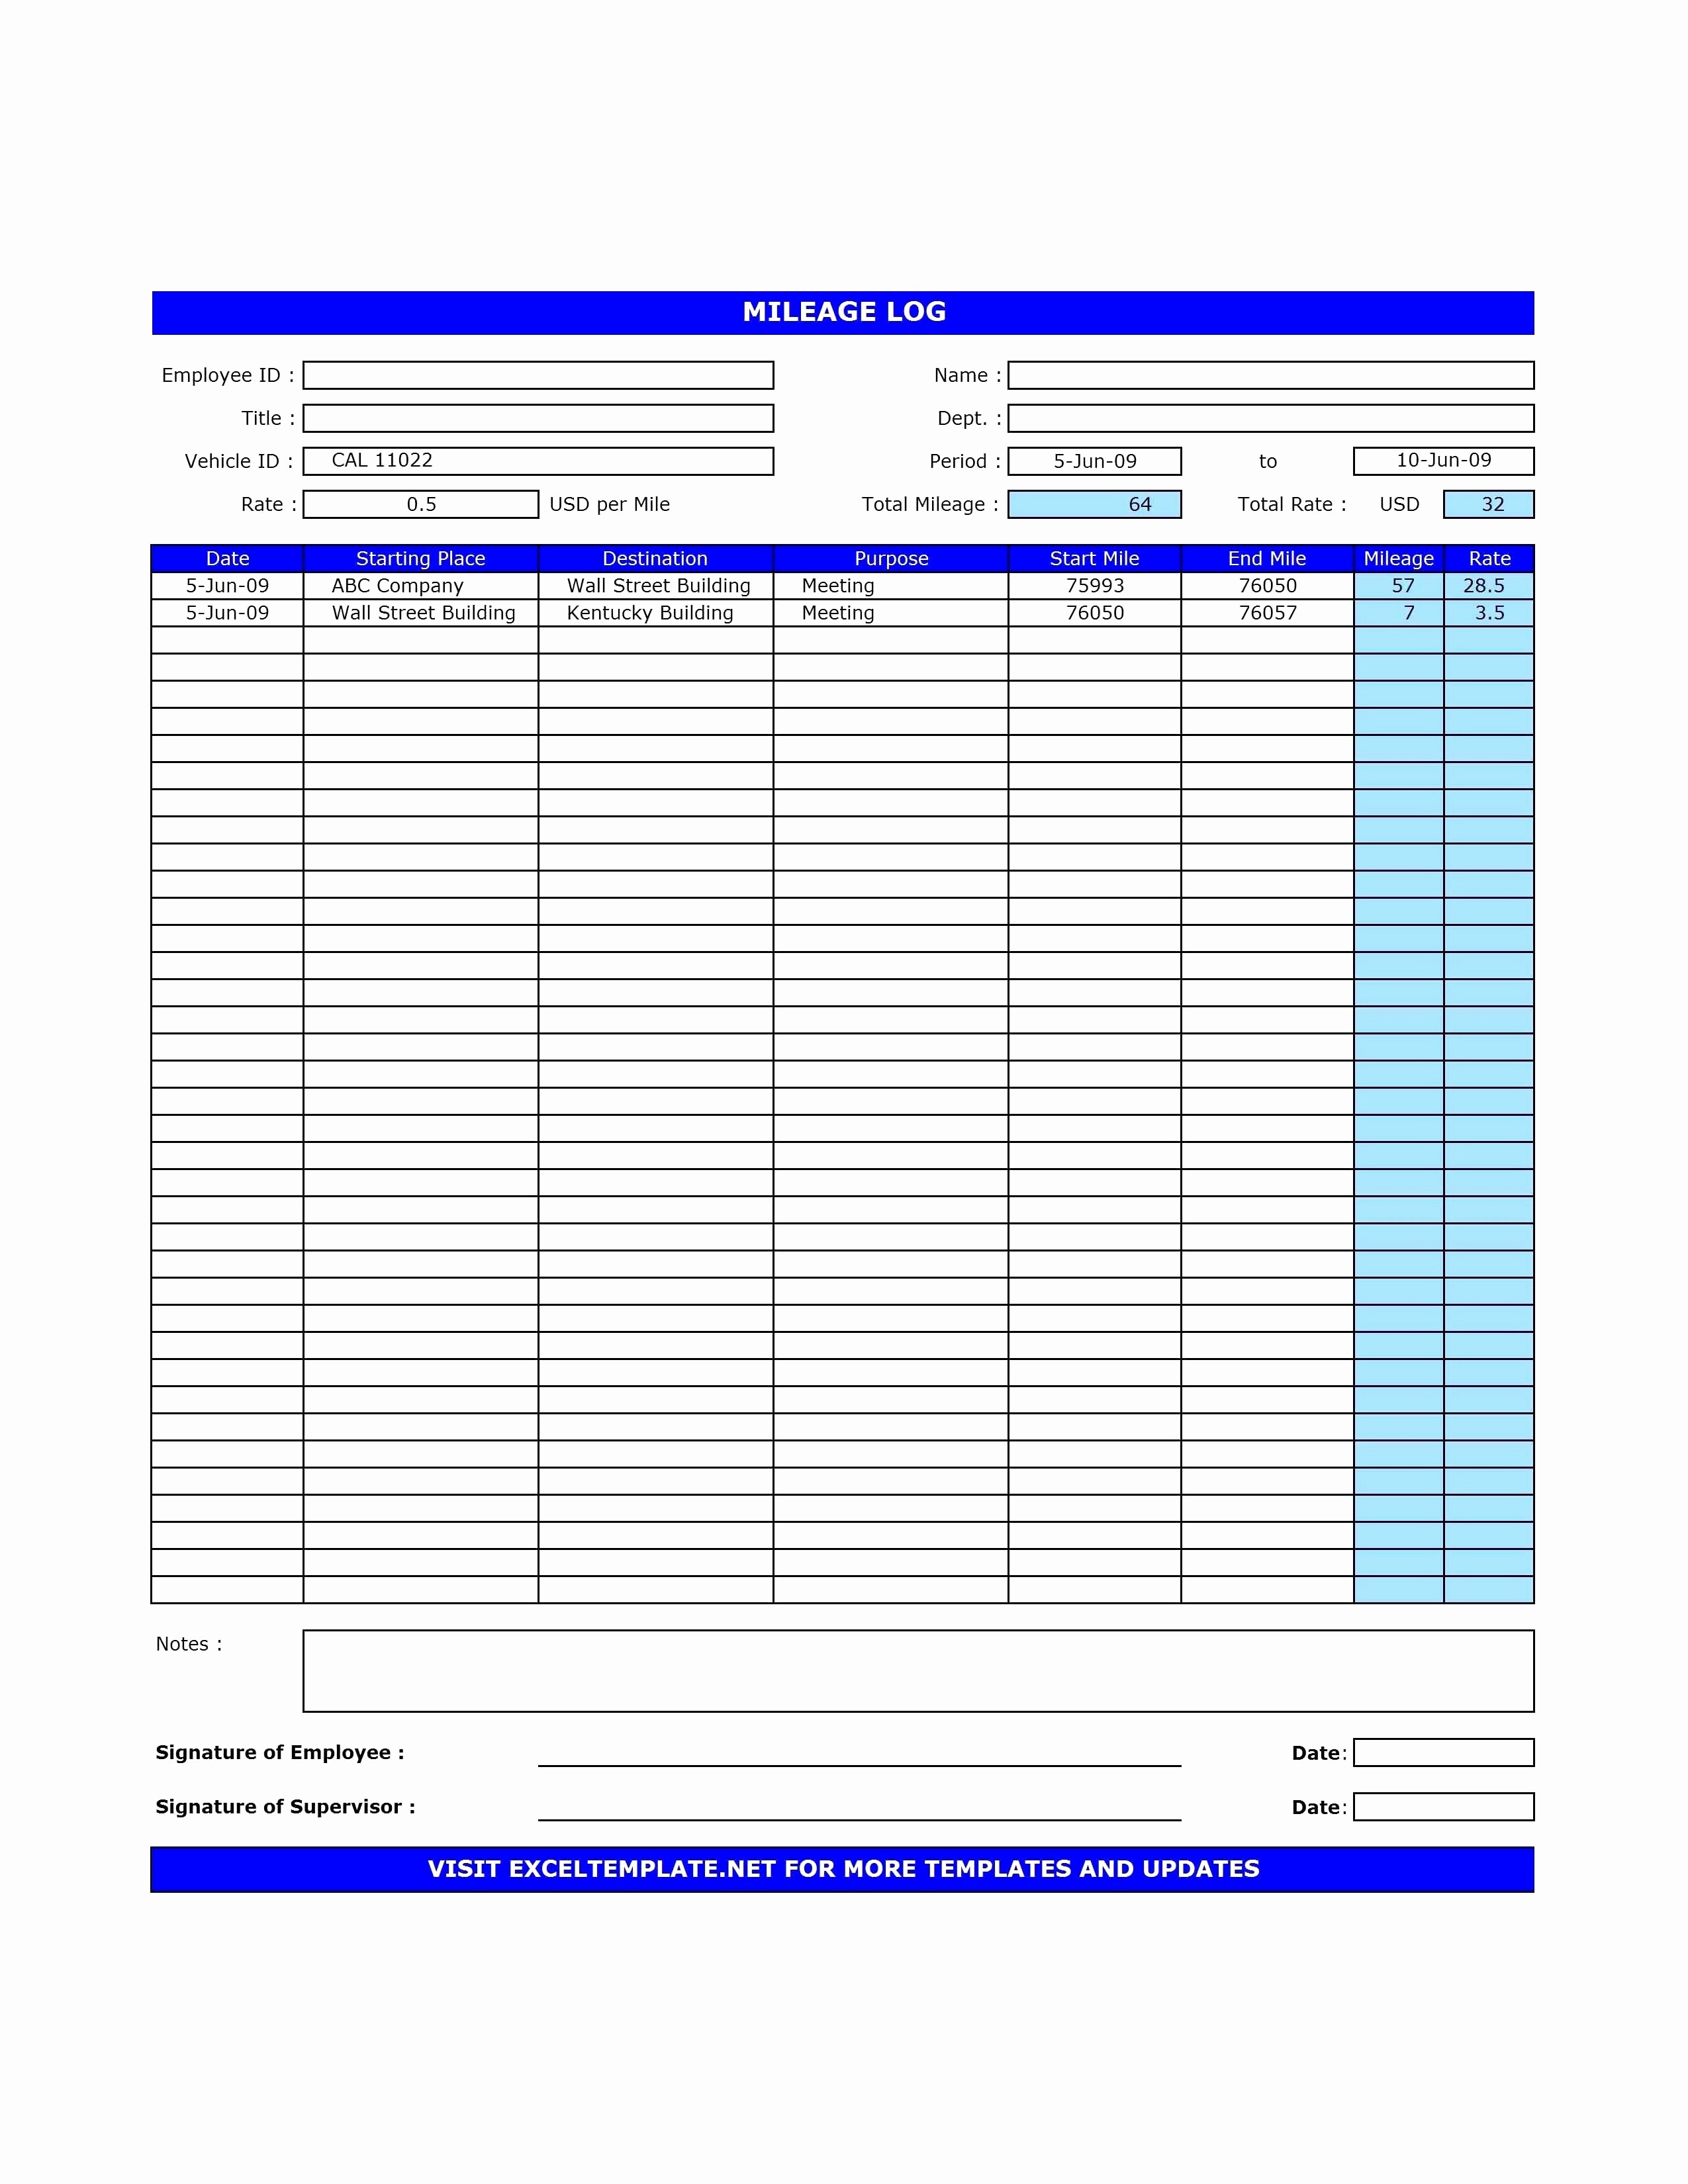 Reloading Log Excel Best Of Spreadsheet Fresh Document